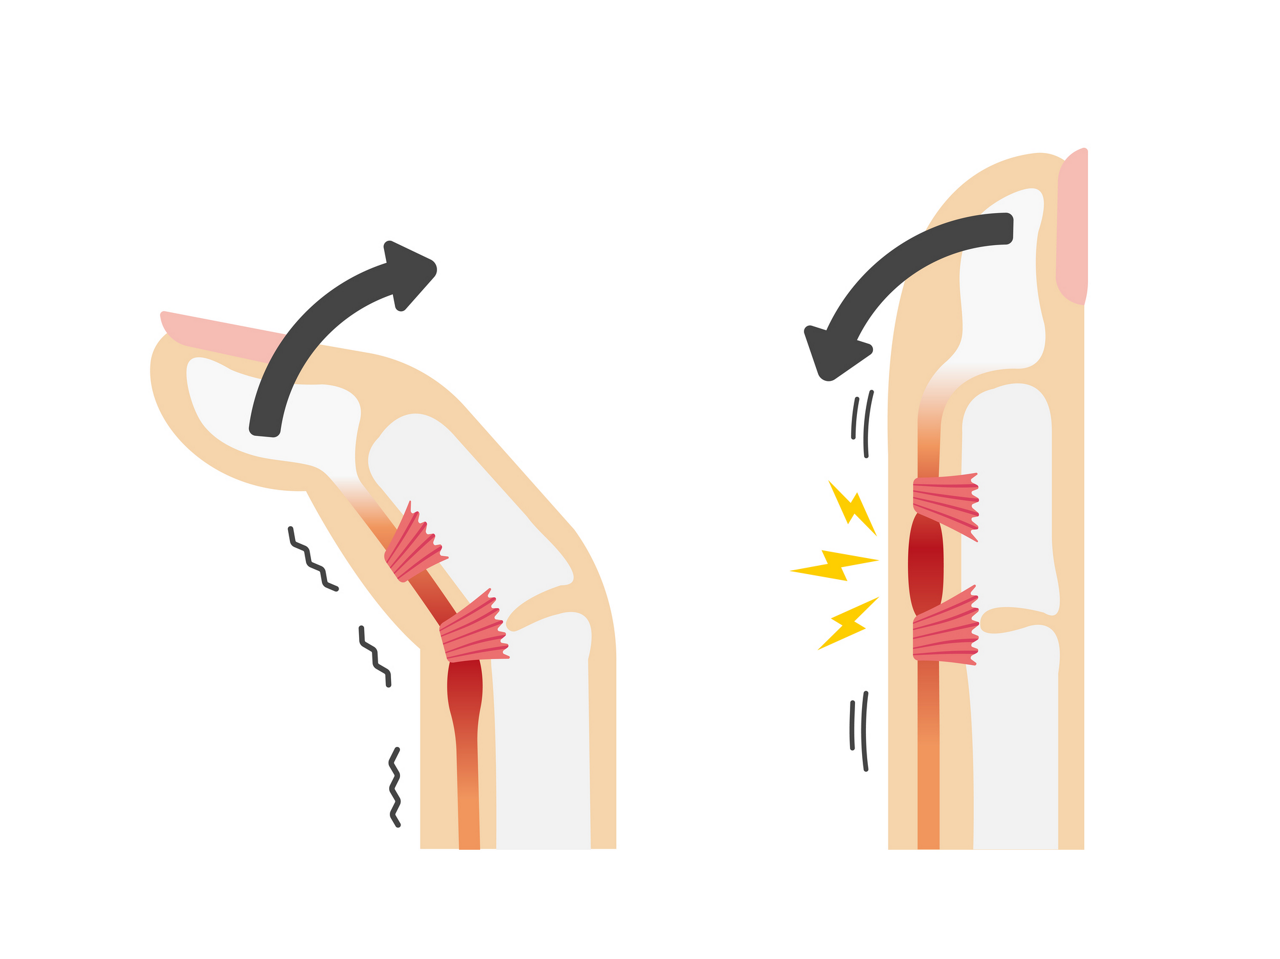 「ばね指」は太くなった腱が腱鞘を通過する際にひっかかって起こります。